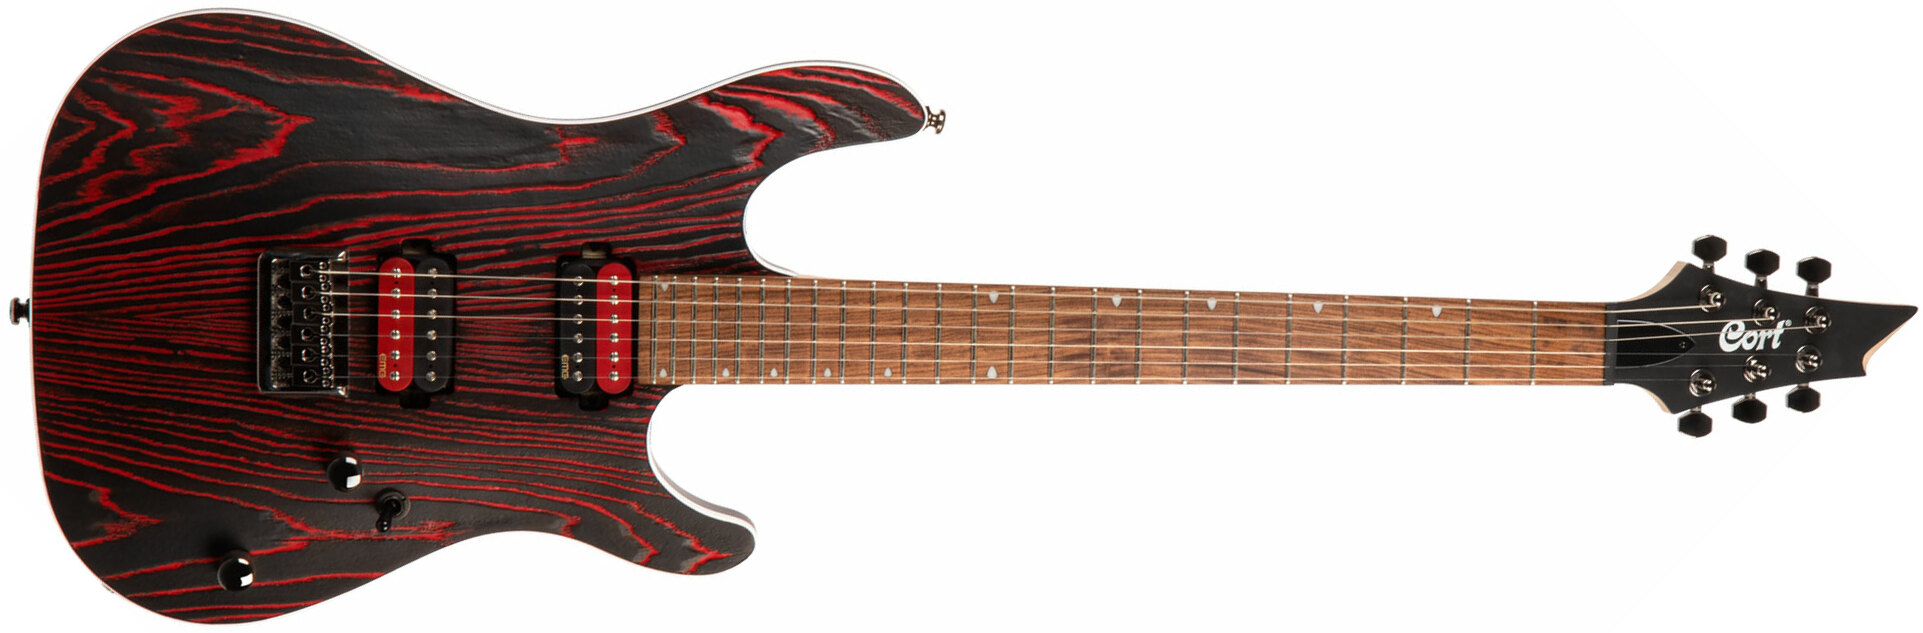 Cort Kx300 Ebr Hh Emg Ht Jat - Etched Black Red - Guitare Électrique Forme Str - Main picture